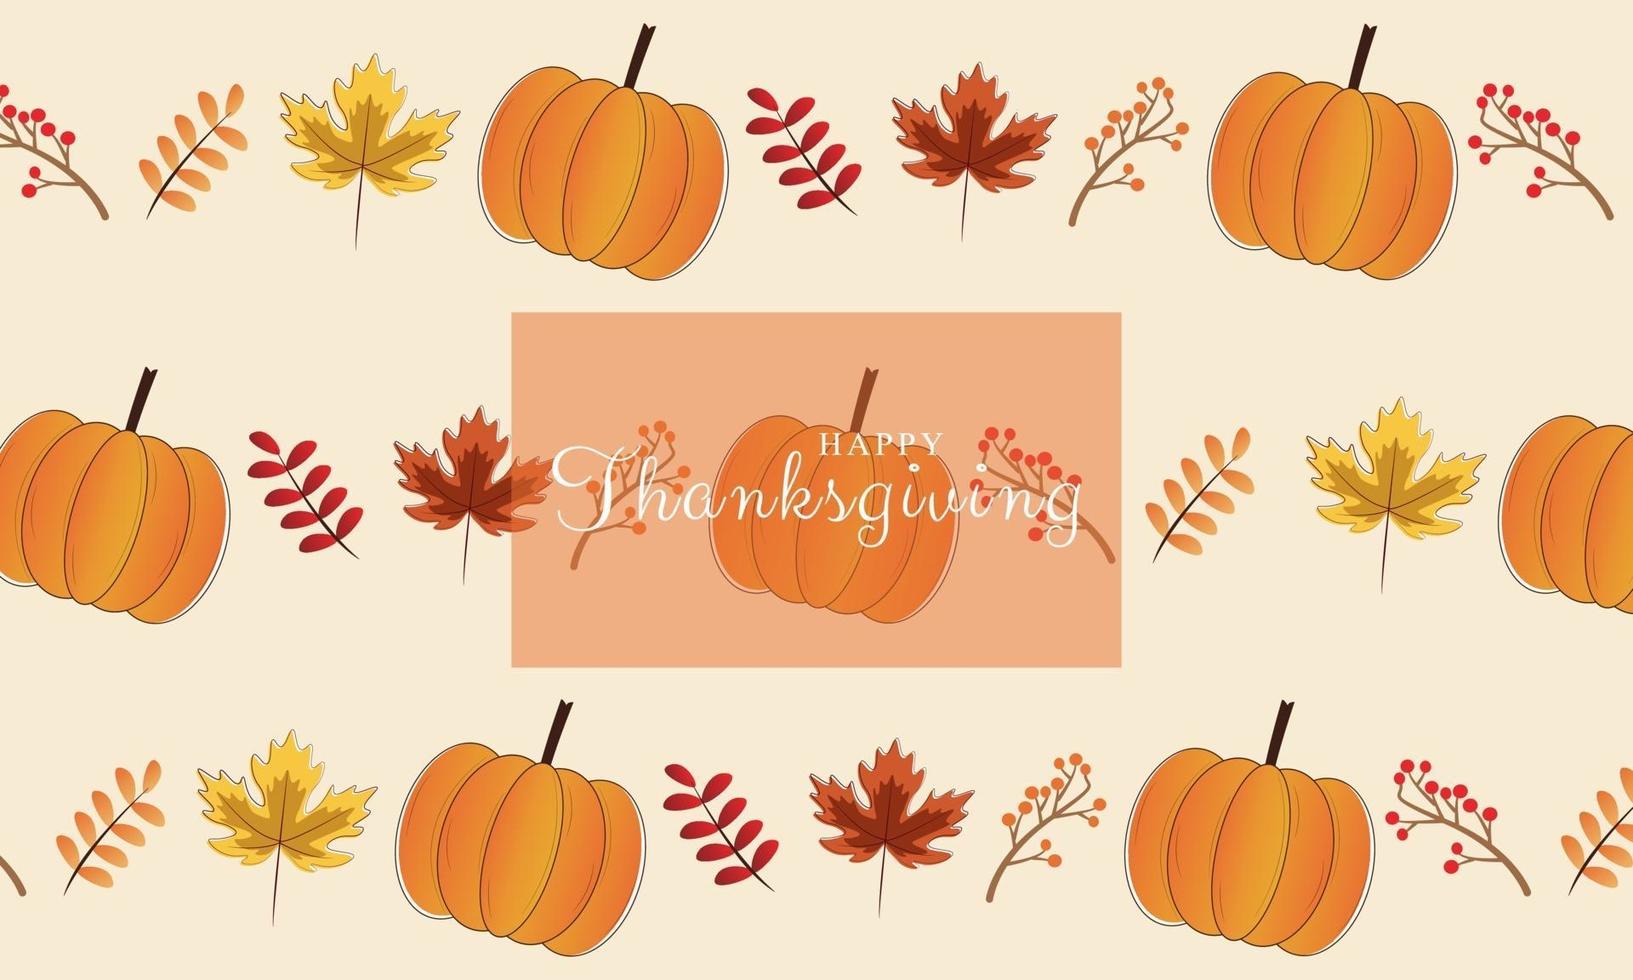 Happy Thanksgiving Day Feier Hintergrund Herbstlaub vektor